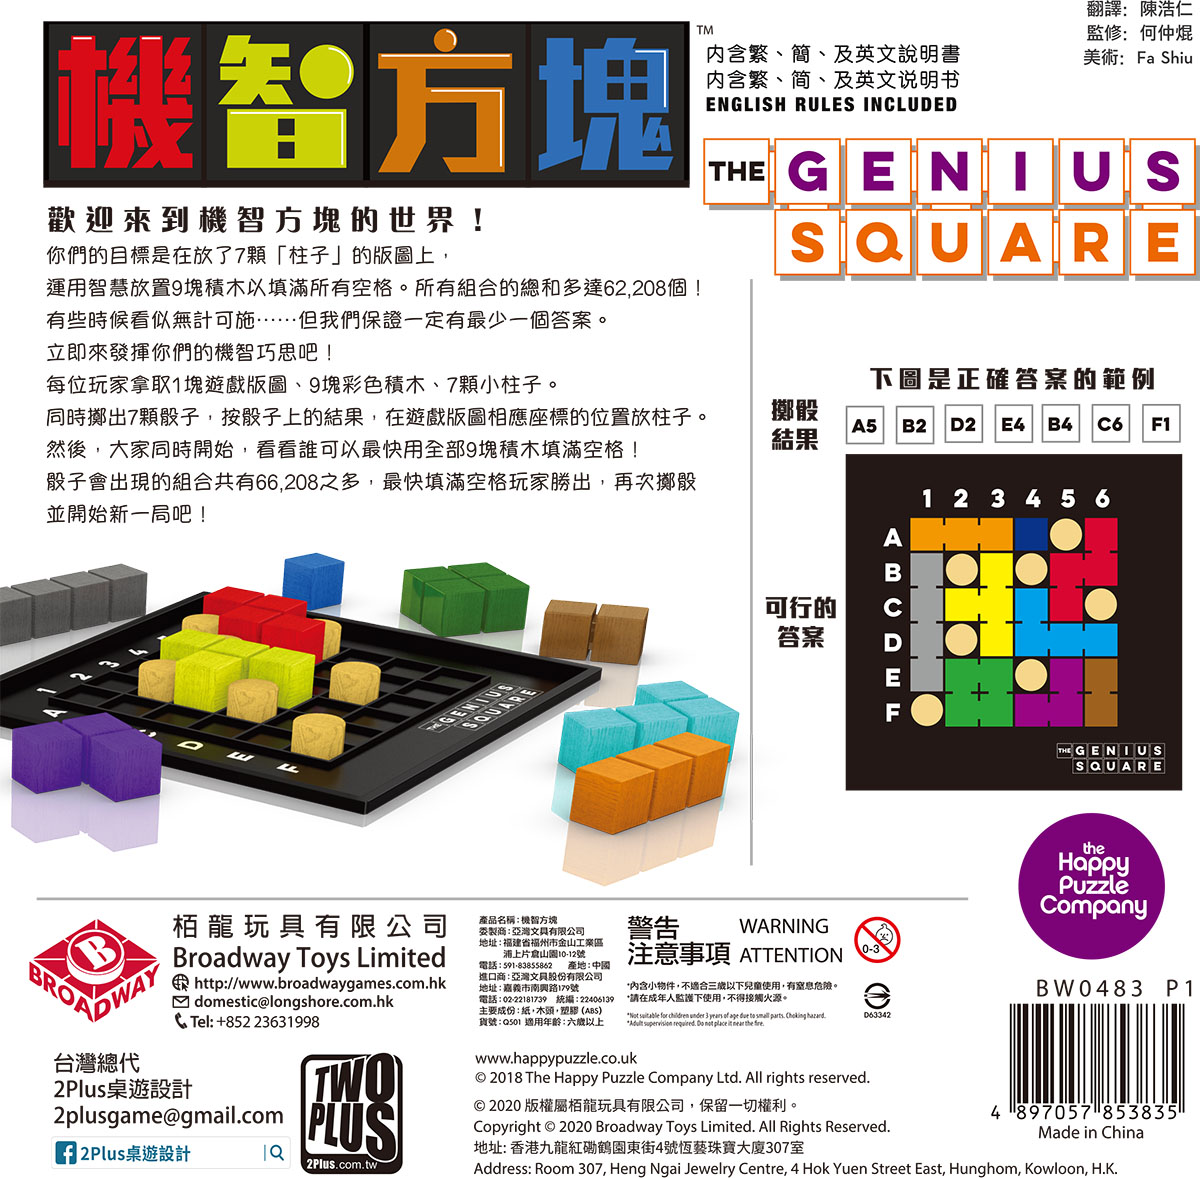 機智方塊 Genius Square